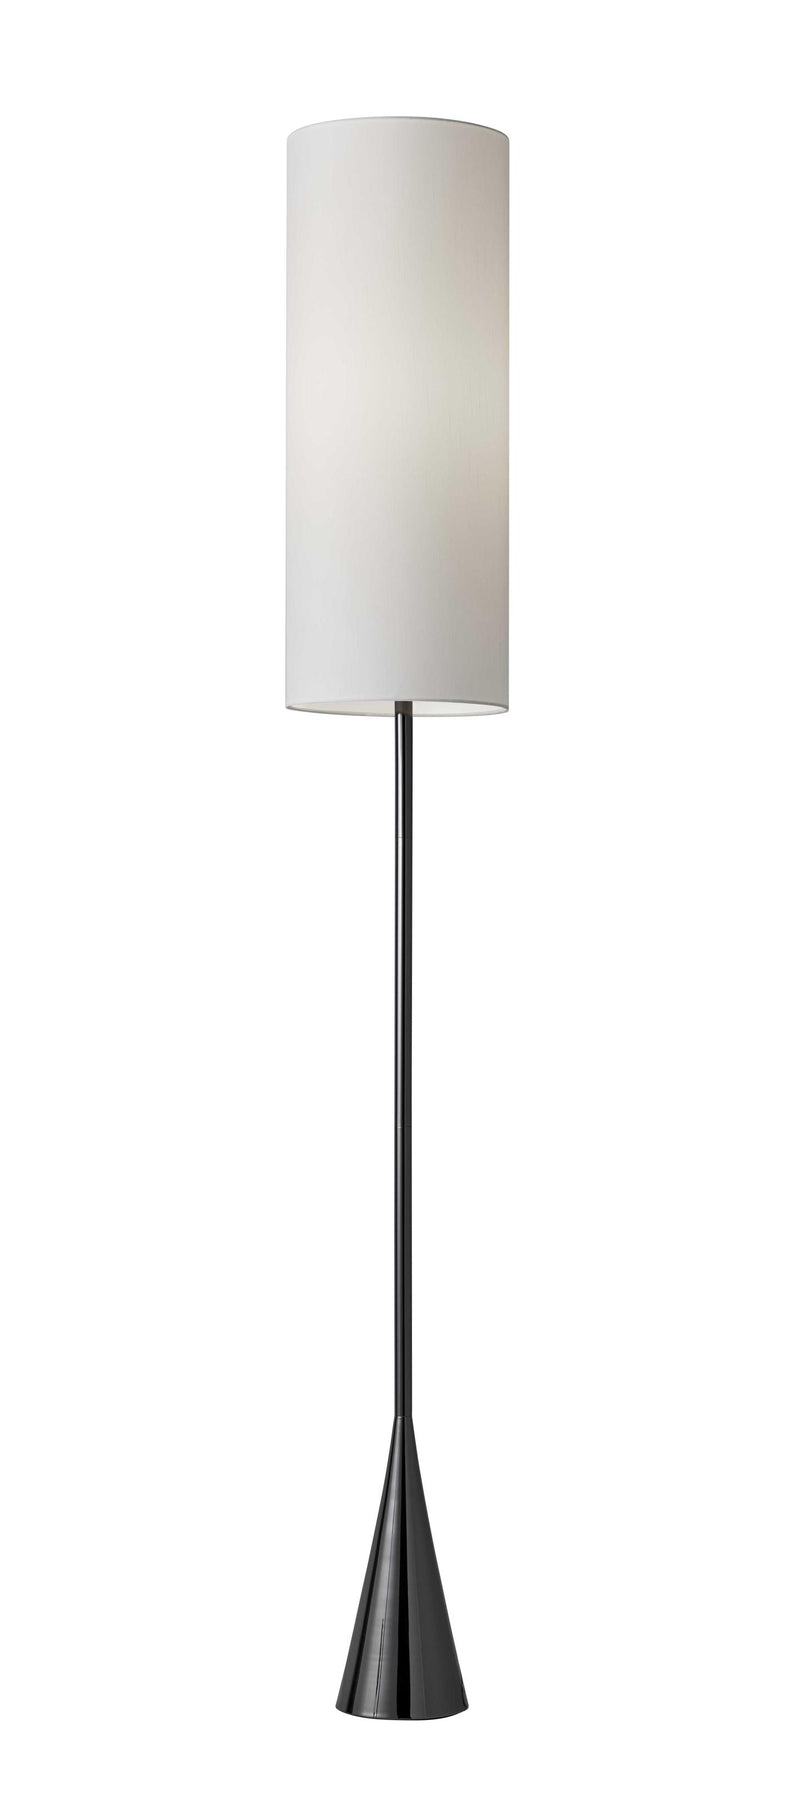 10.5" X 10.5" X 74" Black Metal Floor Lamp